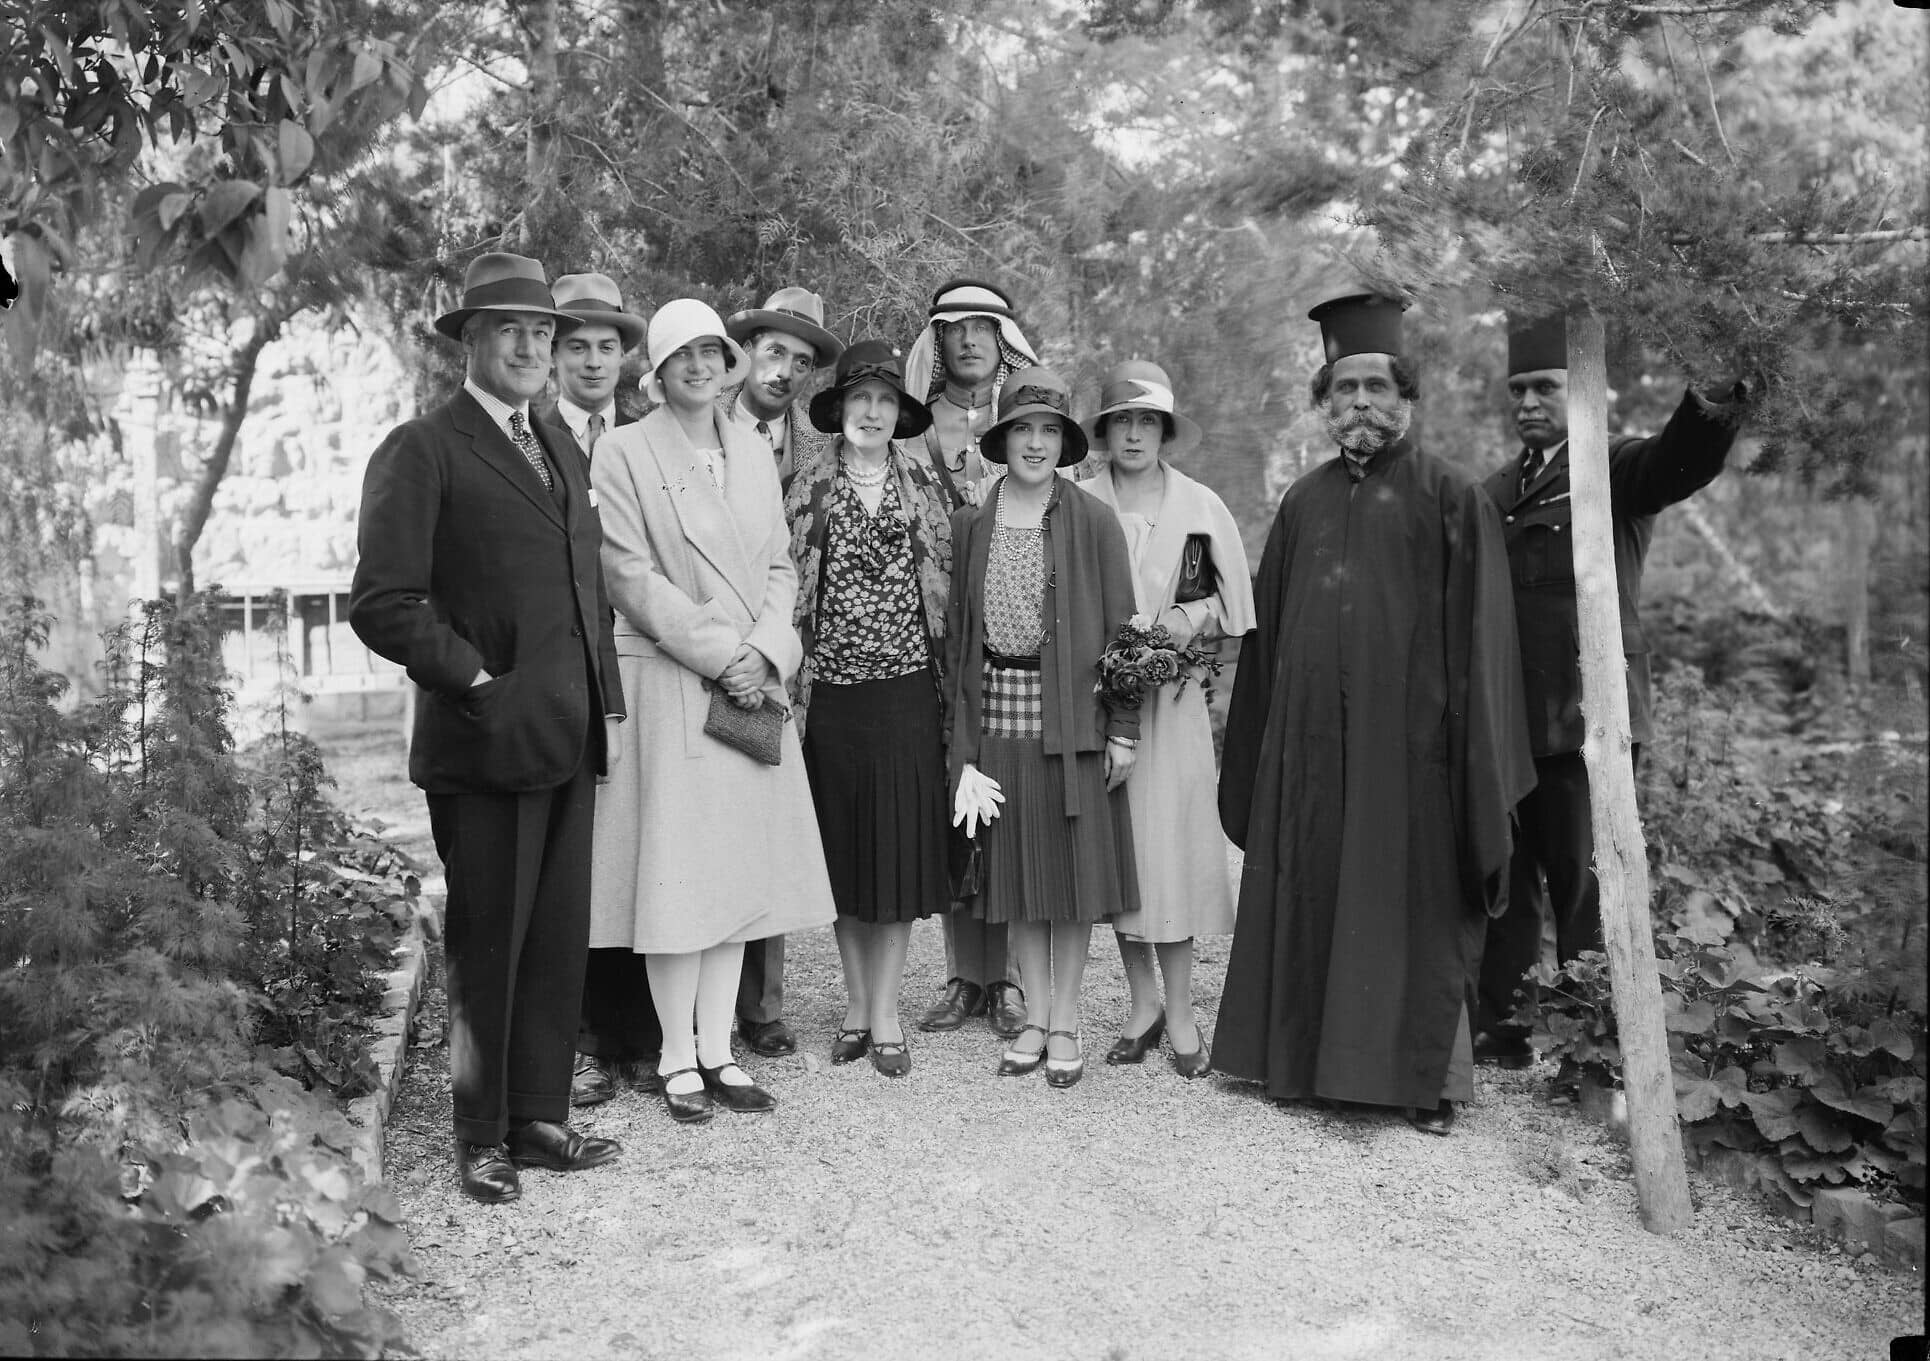 הנציב העליון הבריטי ג'ון צ'נסלור, משמאל, עם הנסיכה אילאנה מרומניה ואישים נוספים בגן שלו, בסביבות 1930 (צילום: רשות הציבור)